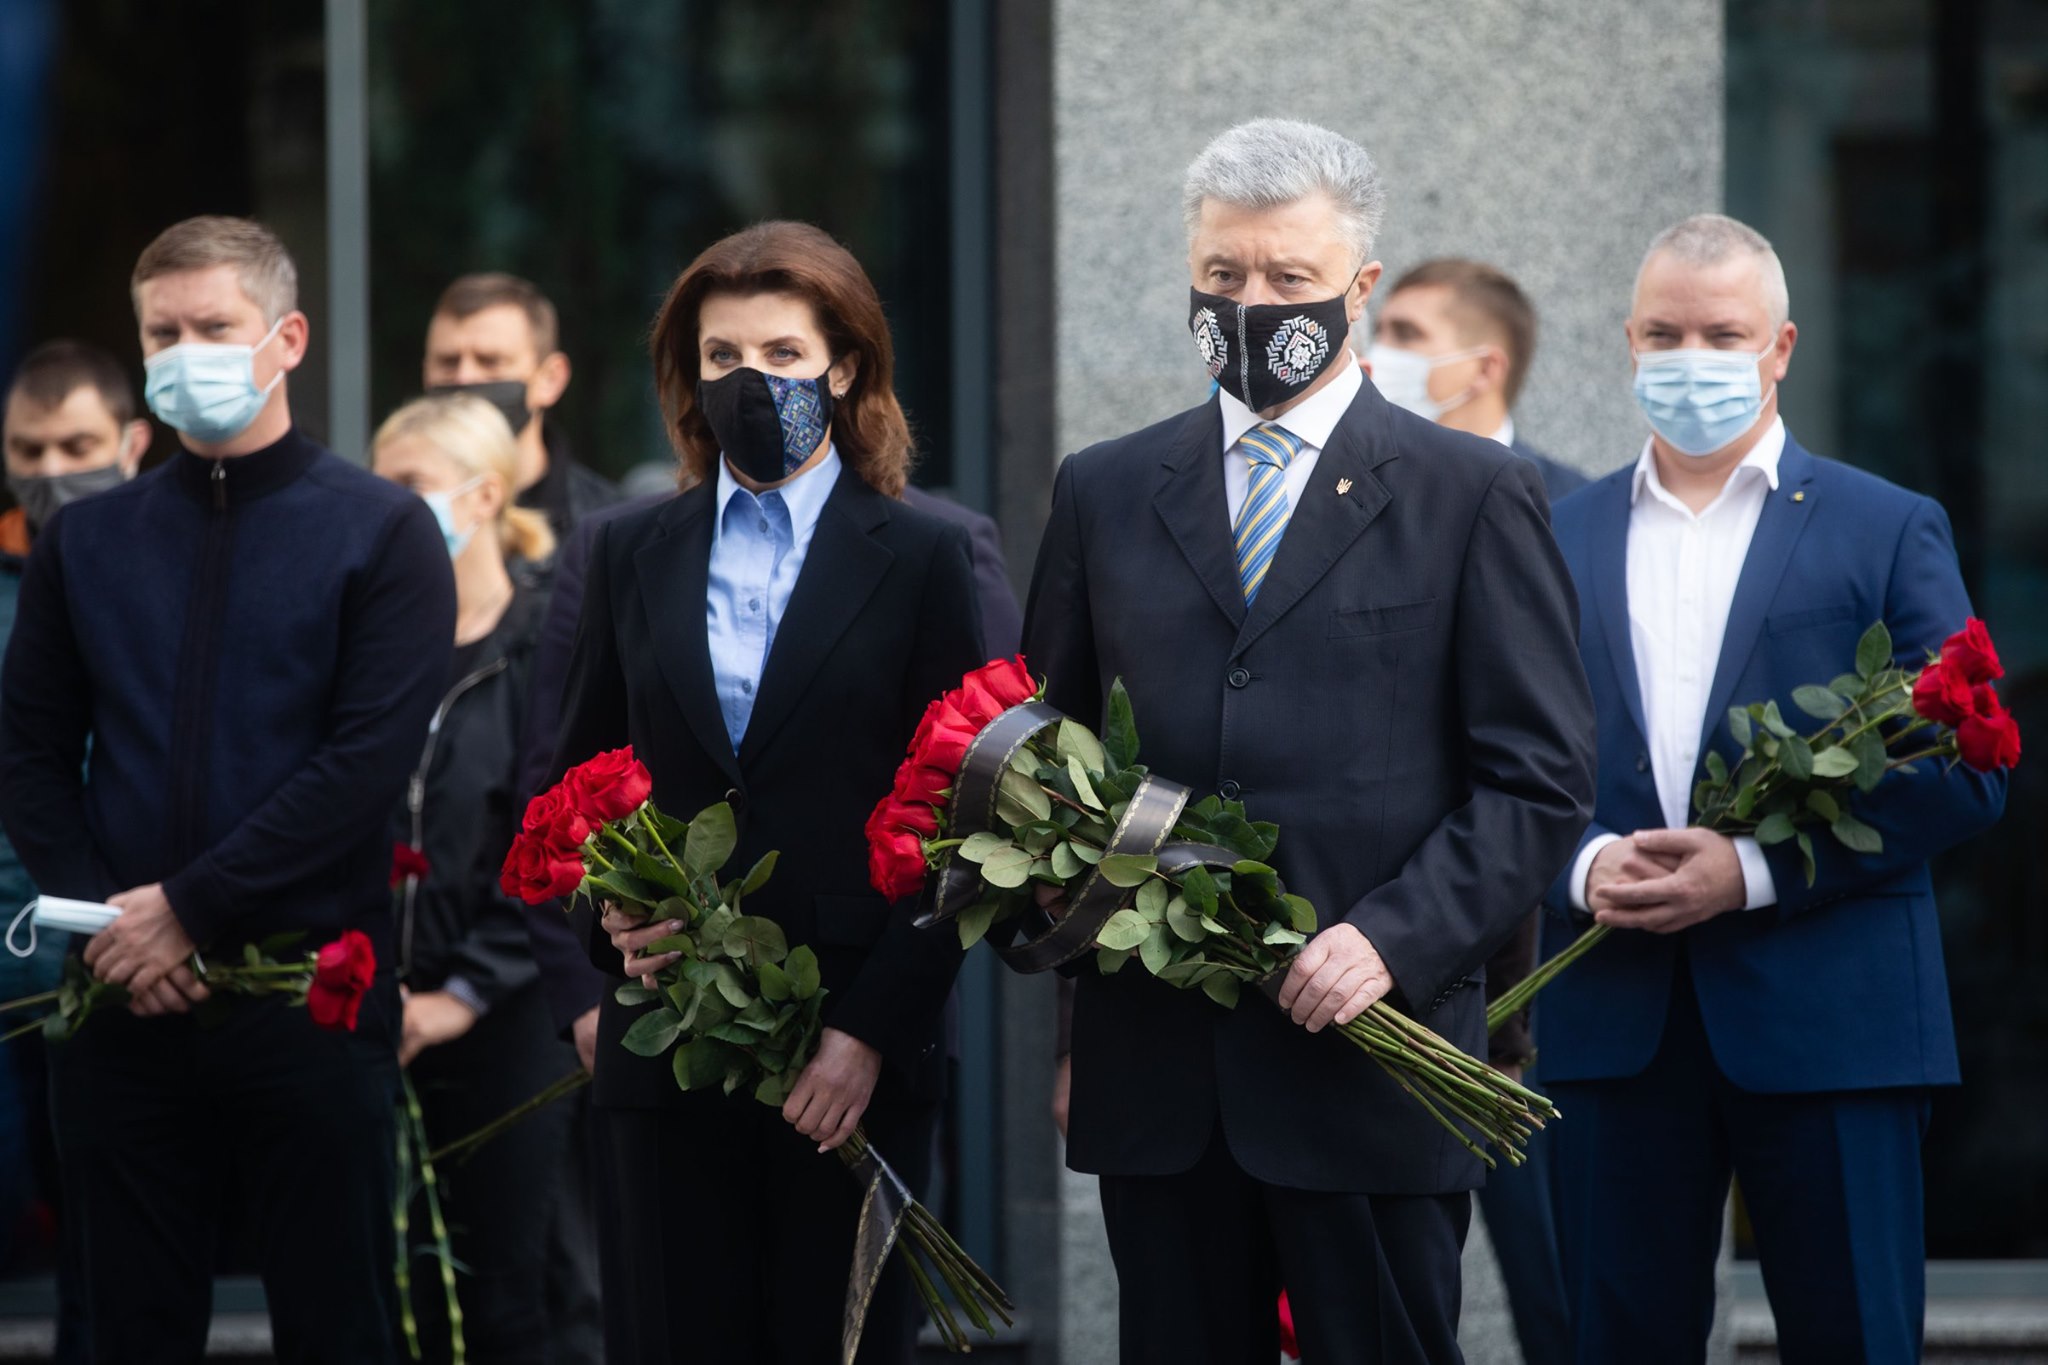 Порошенко поздравил земляков с Днем Защитника Украины: "Мы страна и нация героев!"